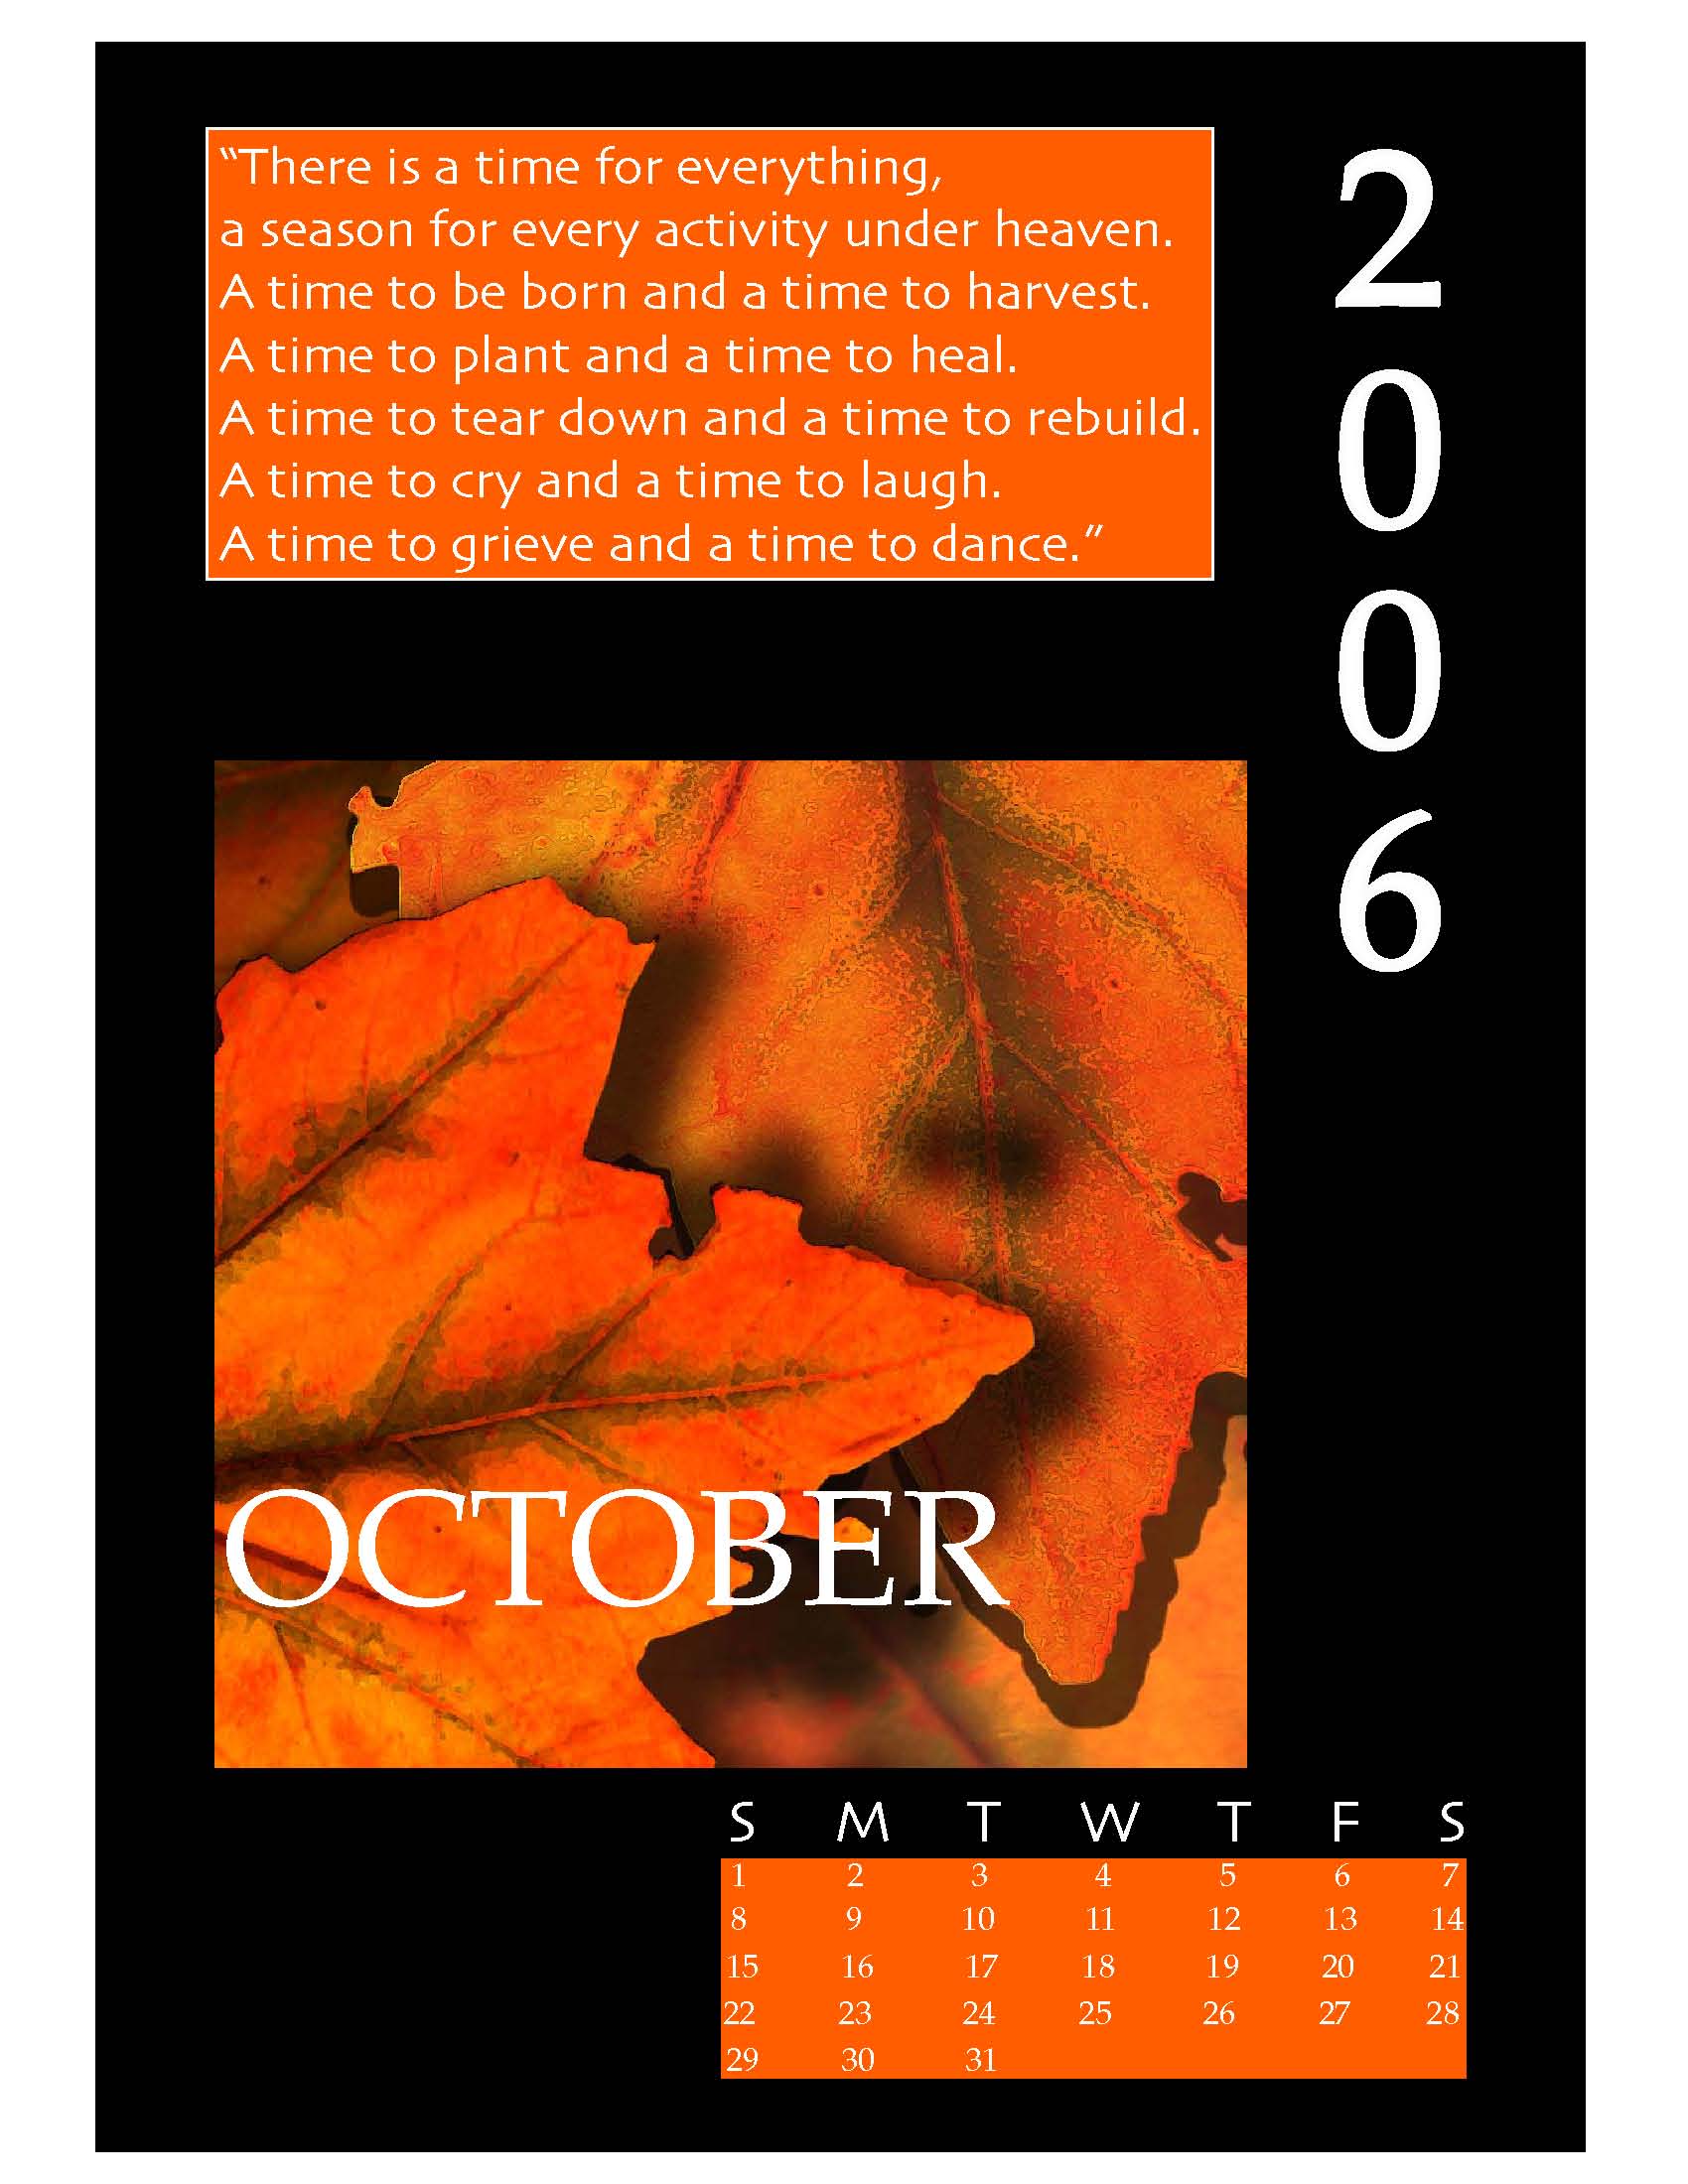 October Calendar1.jpg